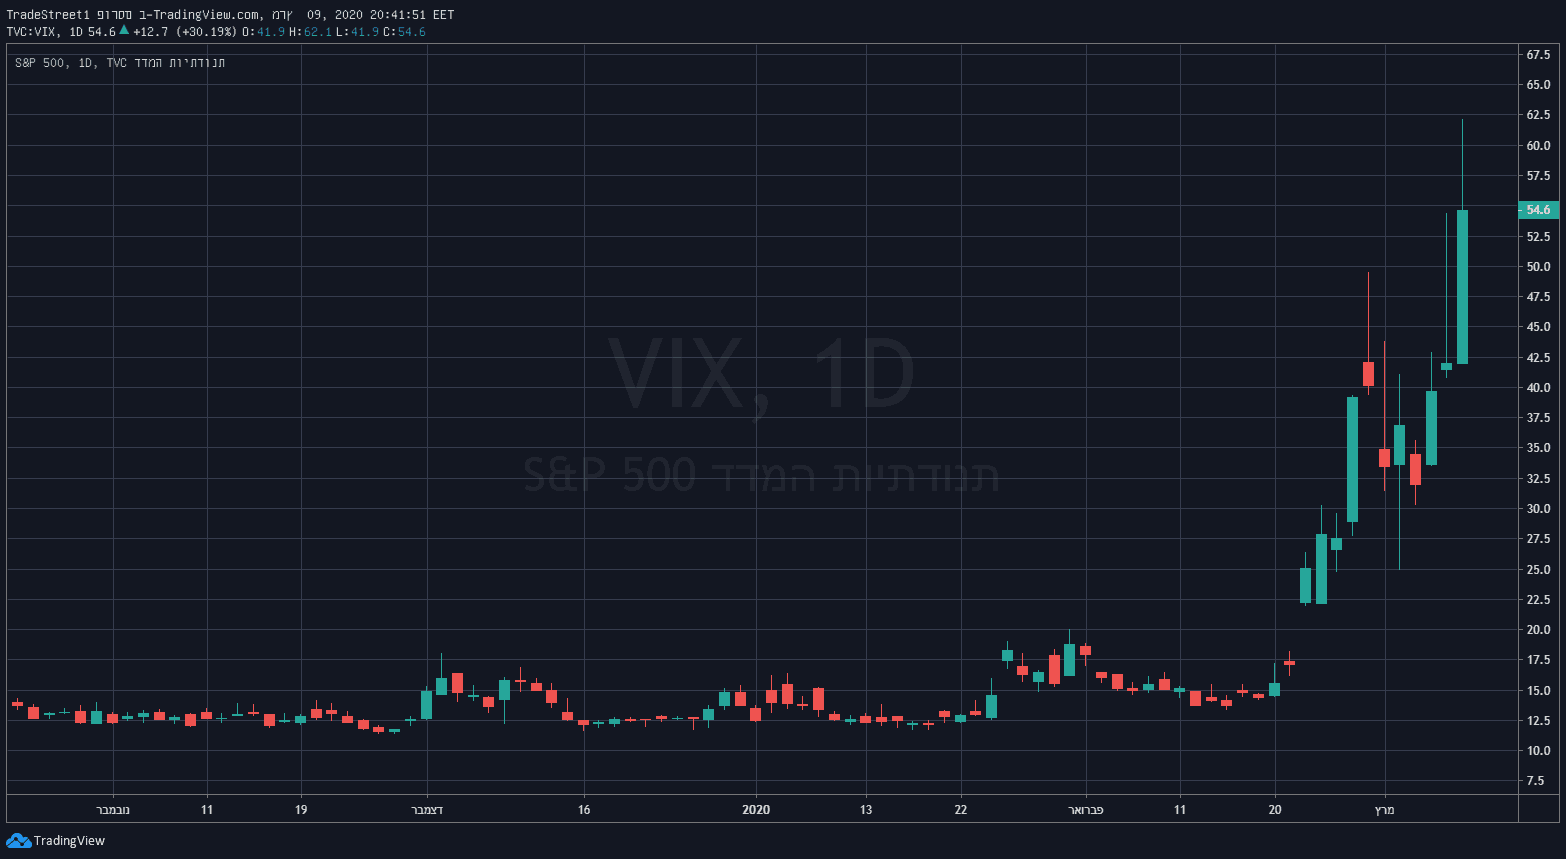 VIX 09.03.2020 A